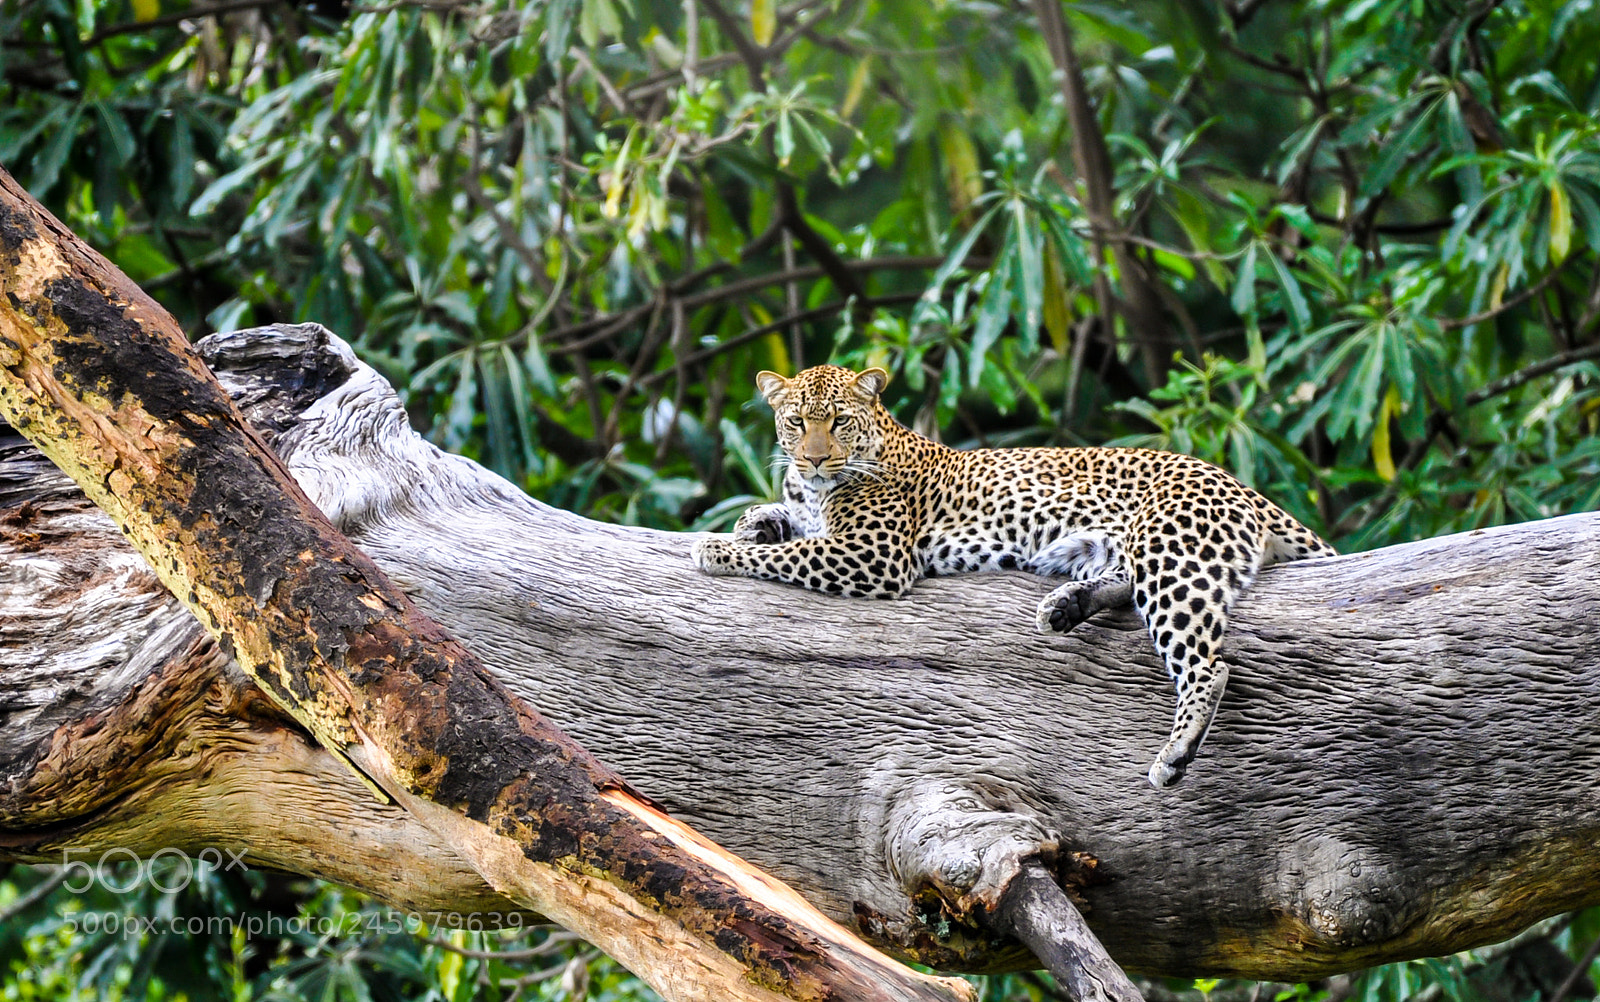 Nikon D90 sample photo. A leopard's rest photography